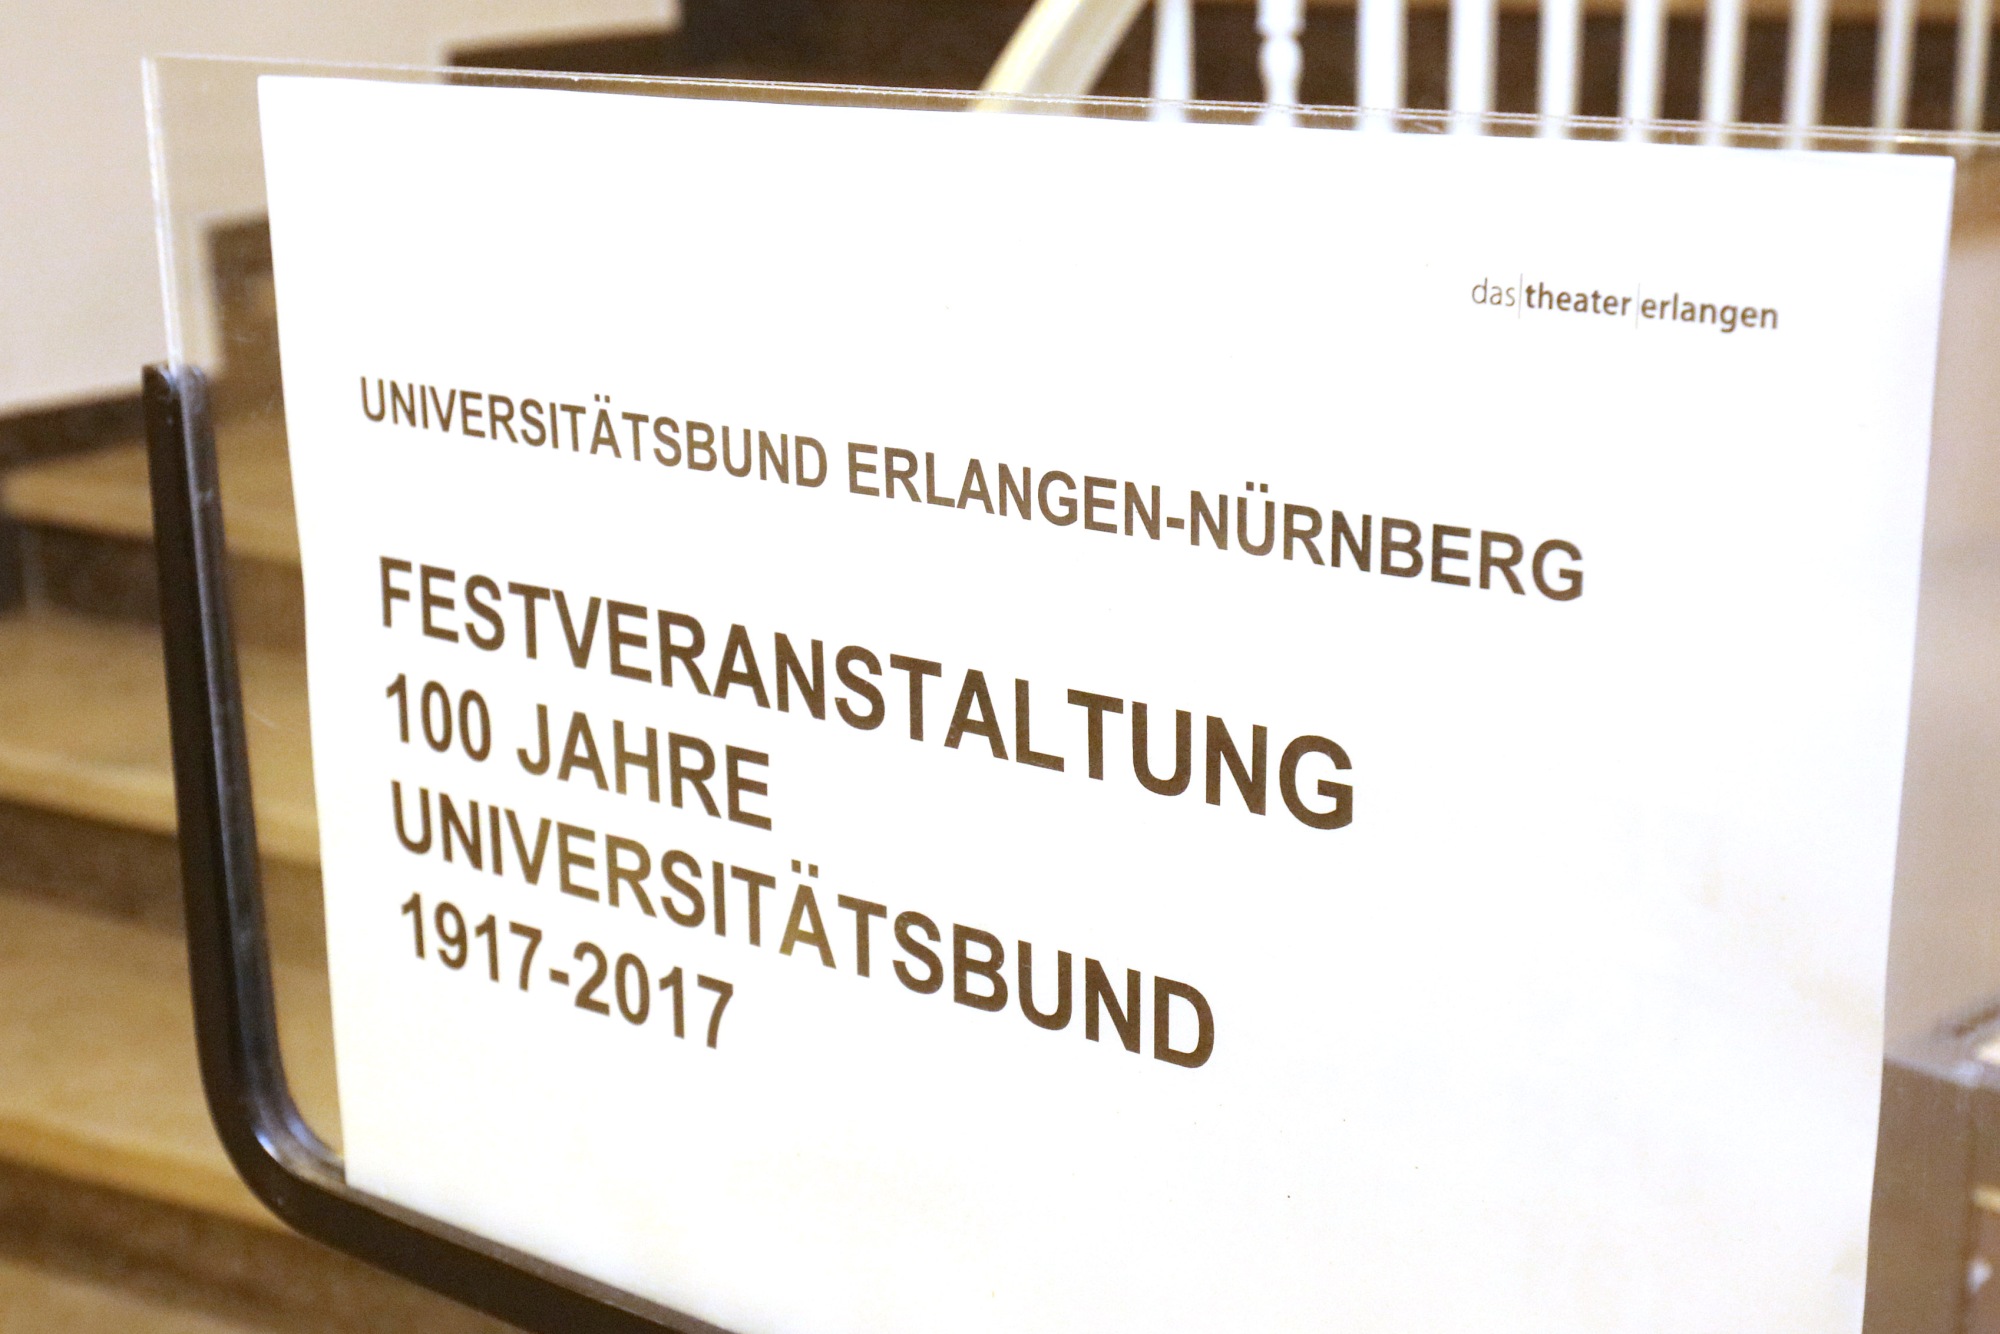 Impressionen von der Festveranstaltung 100 Jahre Universitätsbund Erlangen-Nuernberg (Bild: Kurt Fuchs)